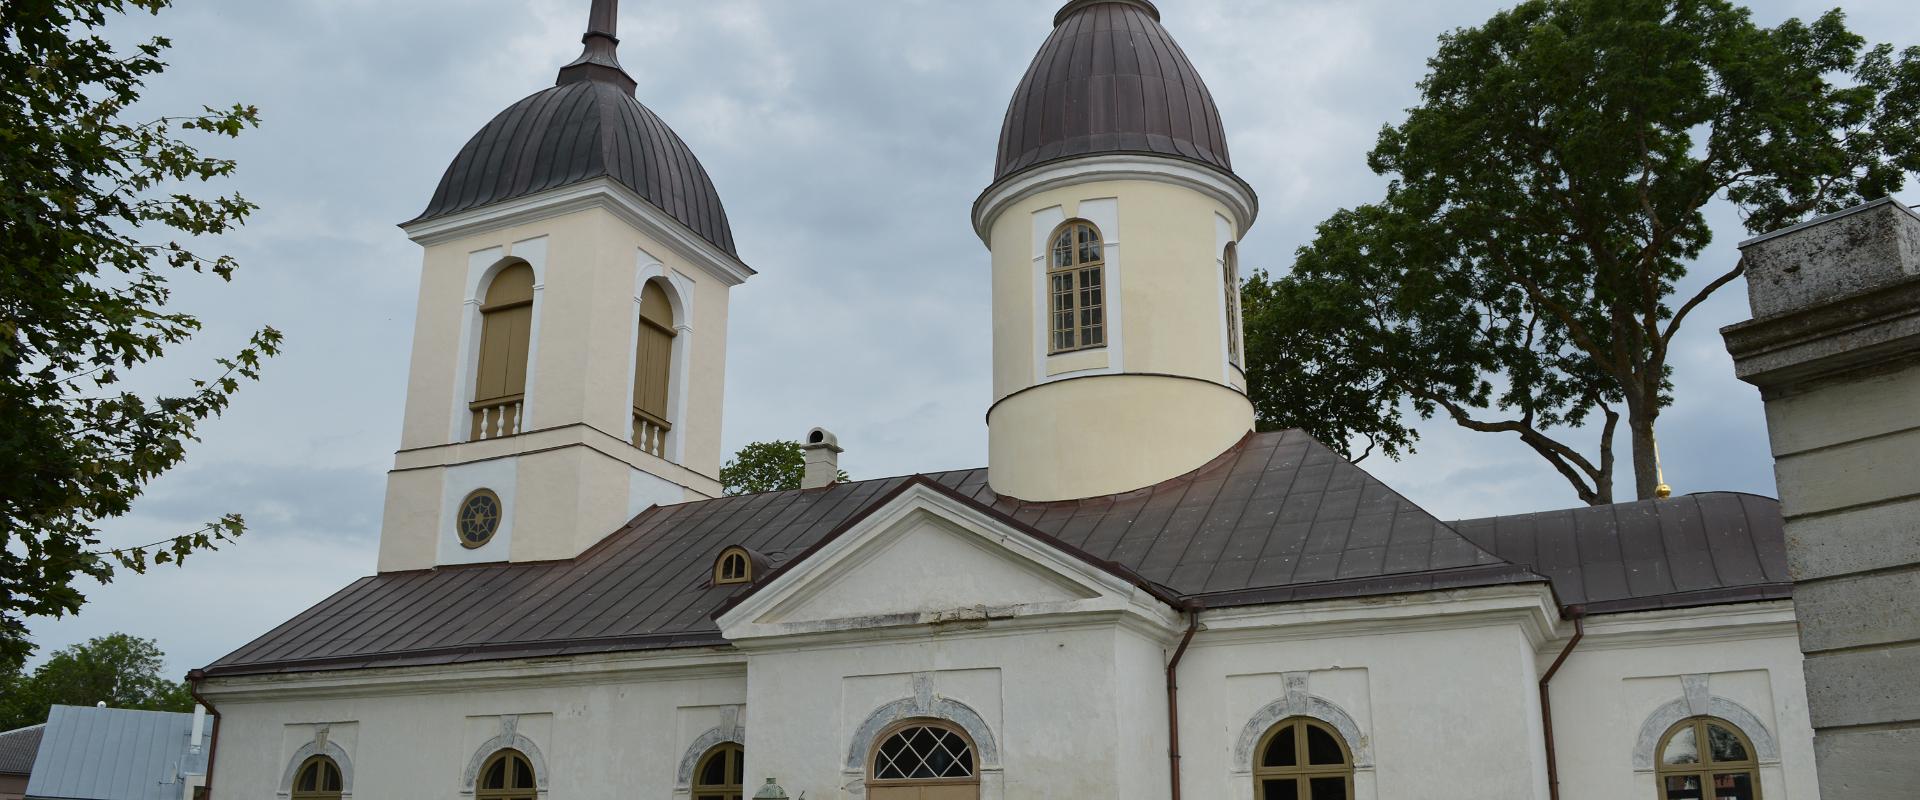 Kuressaaren Pyhän Nikolain kirkko